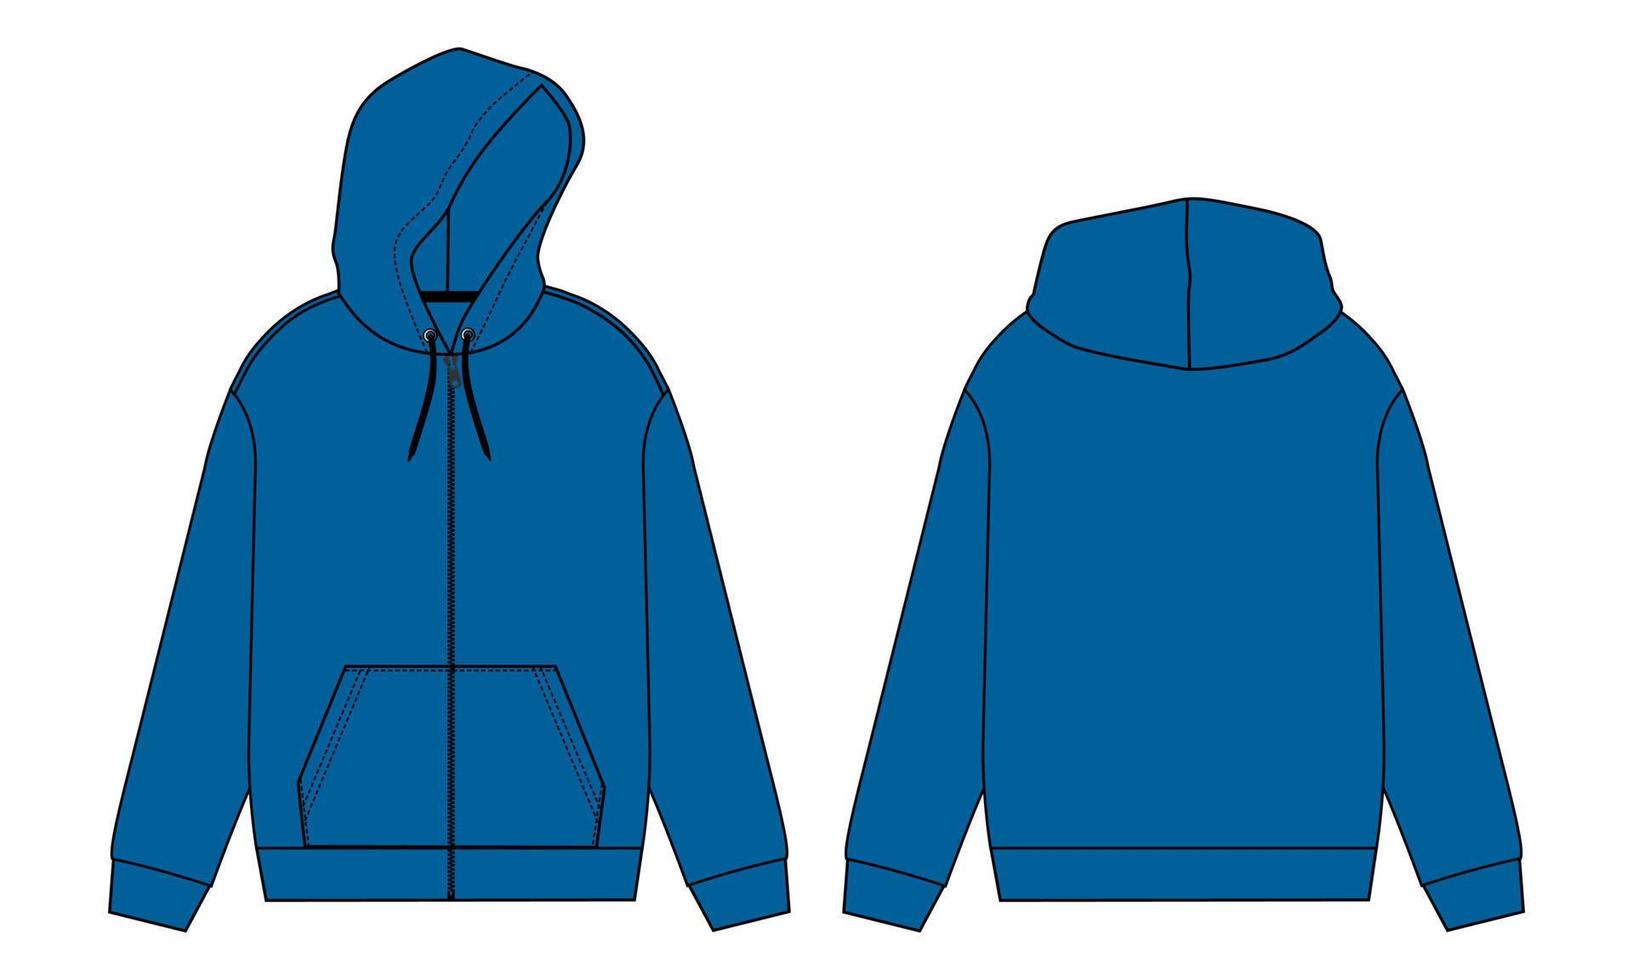 moletom com capuz de manga comprida ilustração em vetor de desenho plano de moda técnica modelo de cor azul